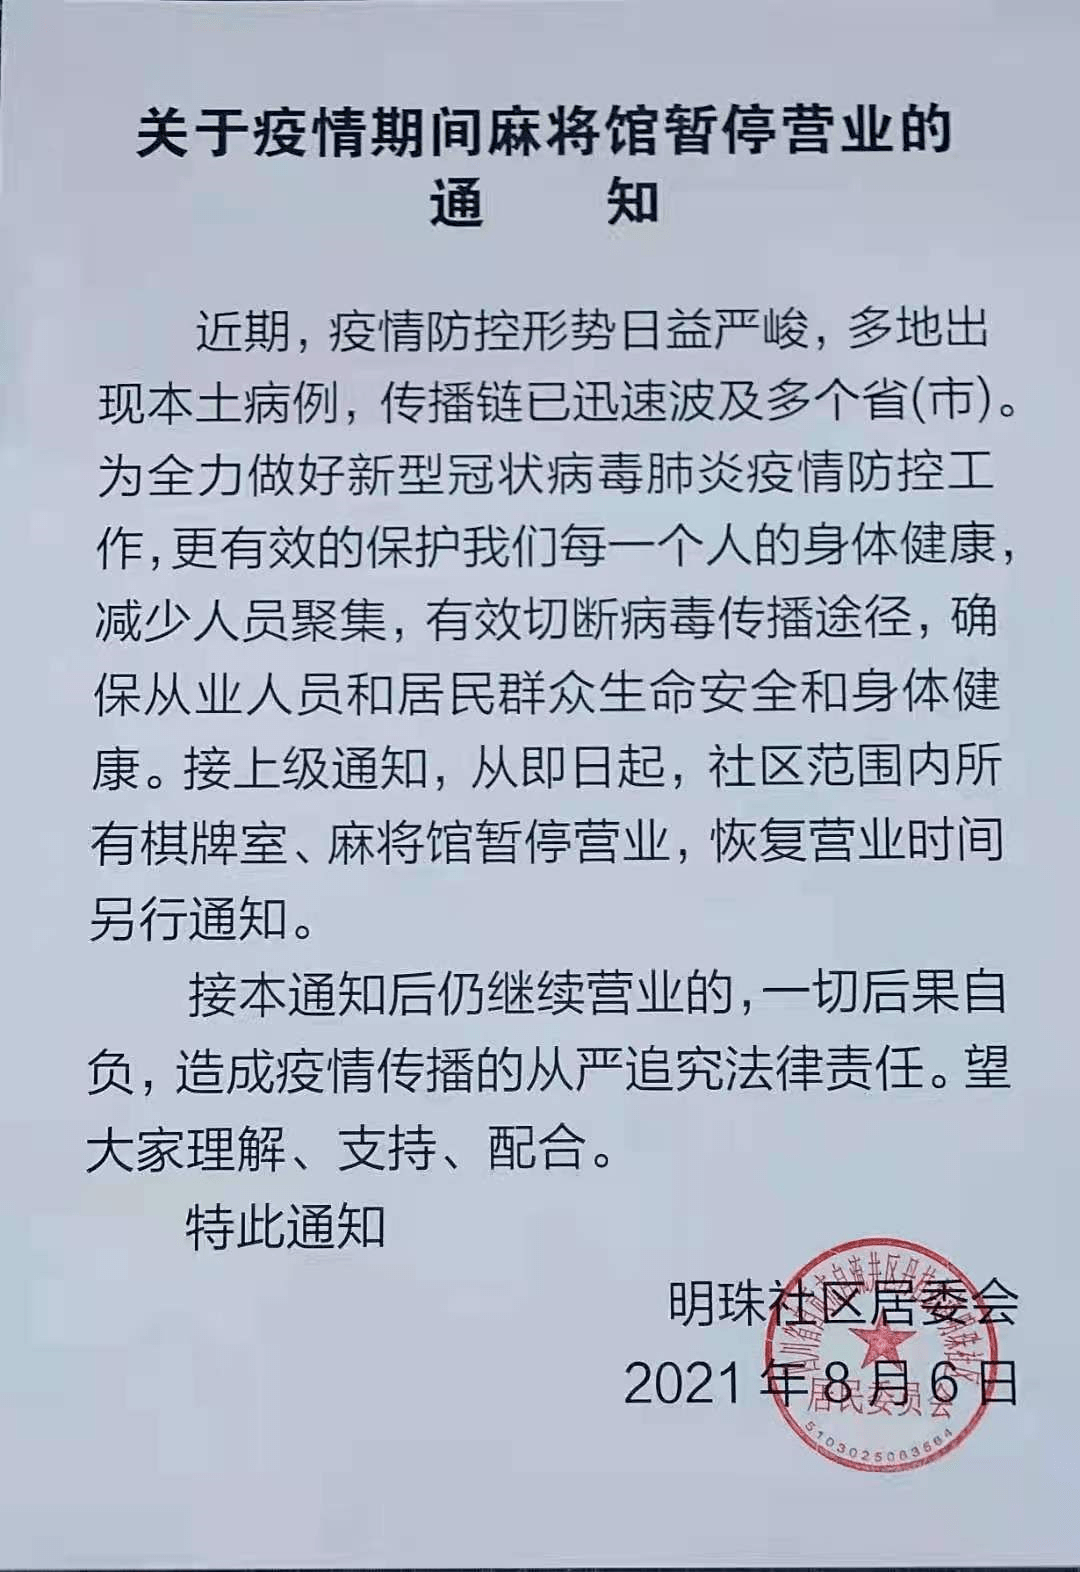 紧急通知!自贡多个社区发布麻将馆,茶坊,棋牌室暂停营业通告!